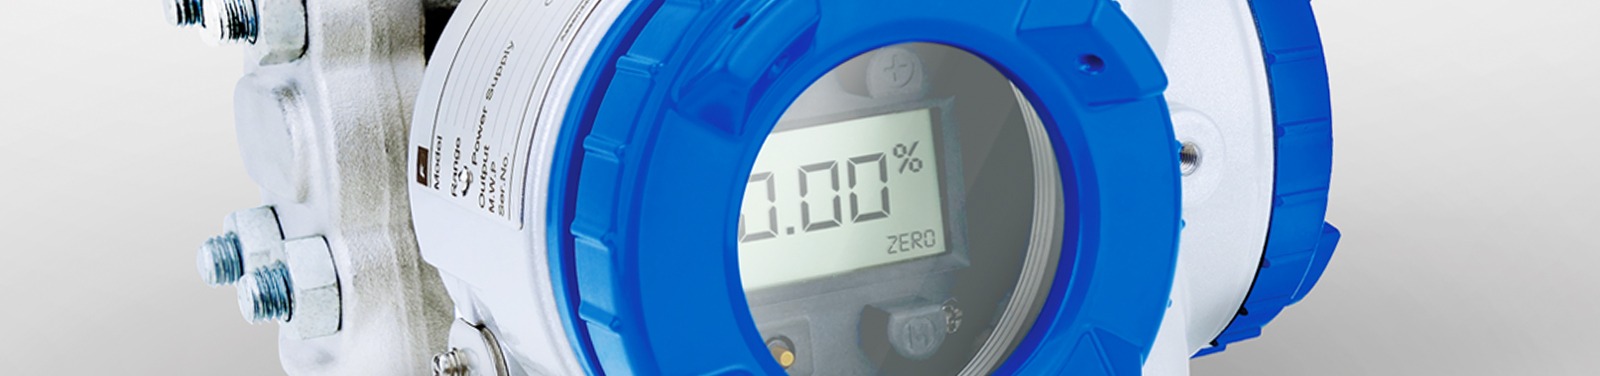 los sensores de presión pueden equiparse con un indicador digital 